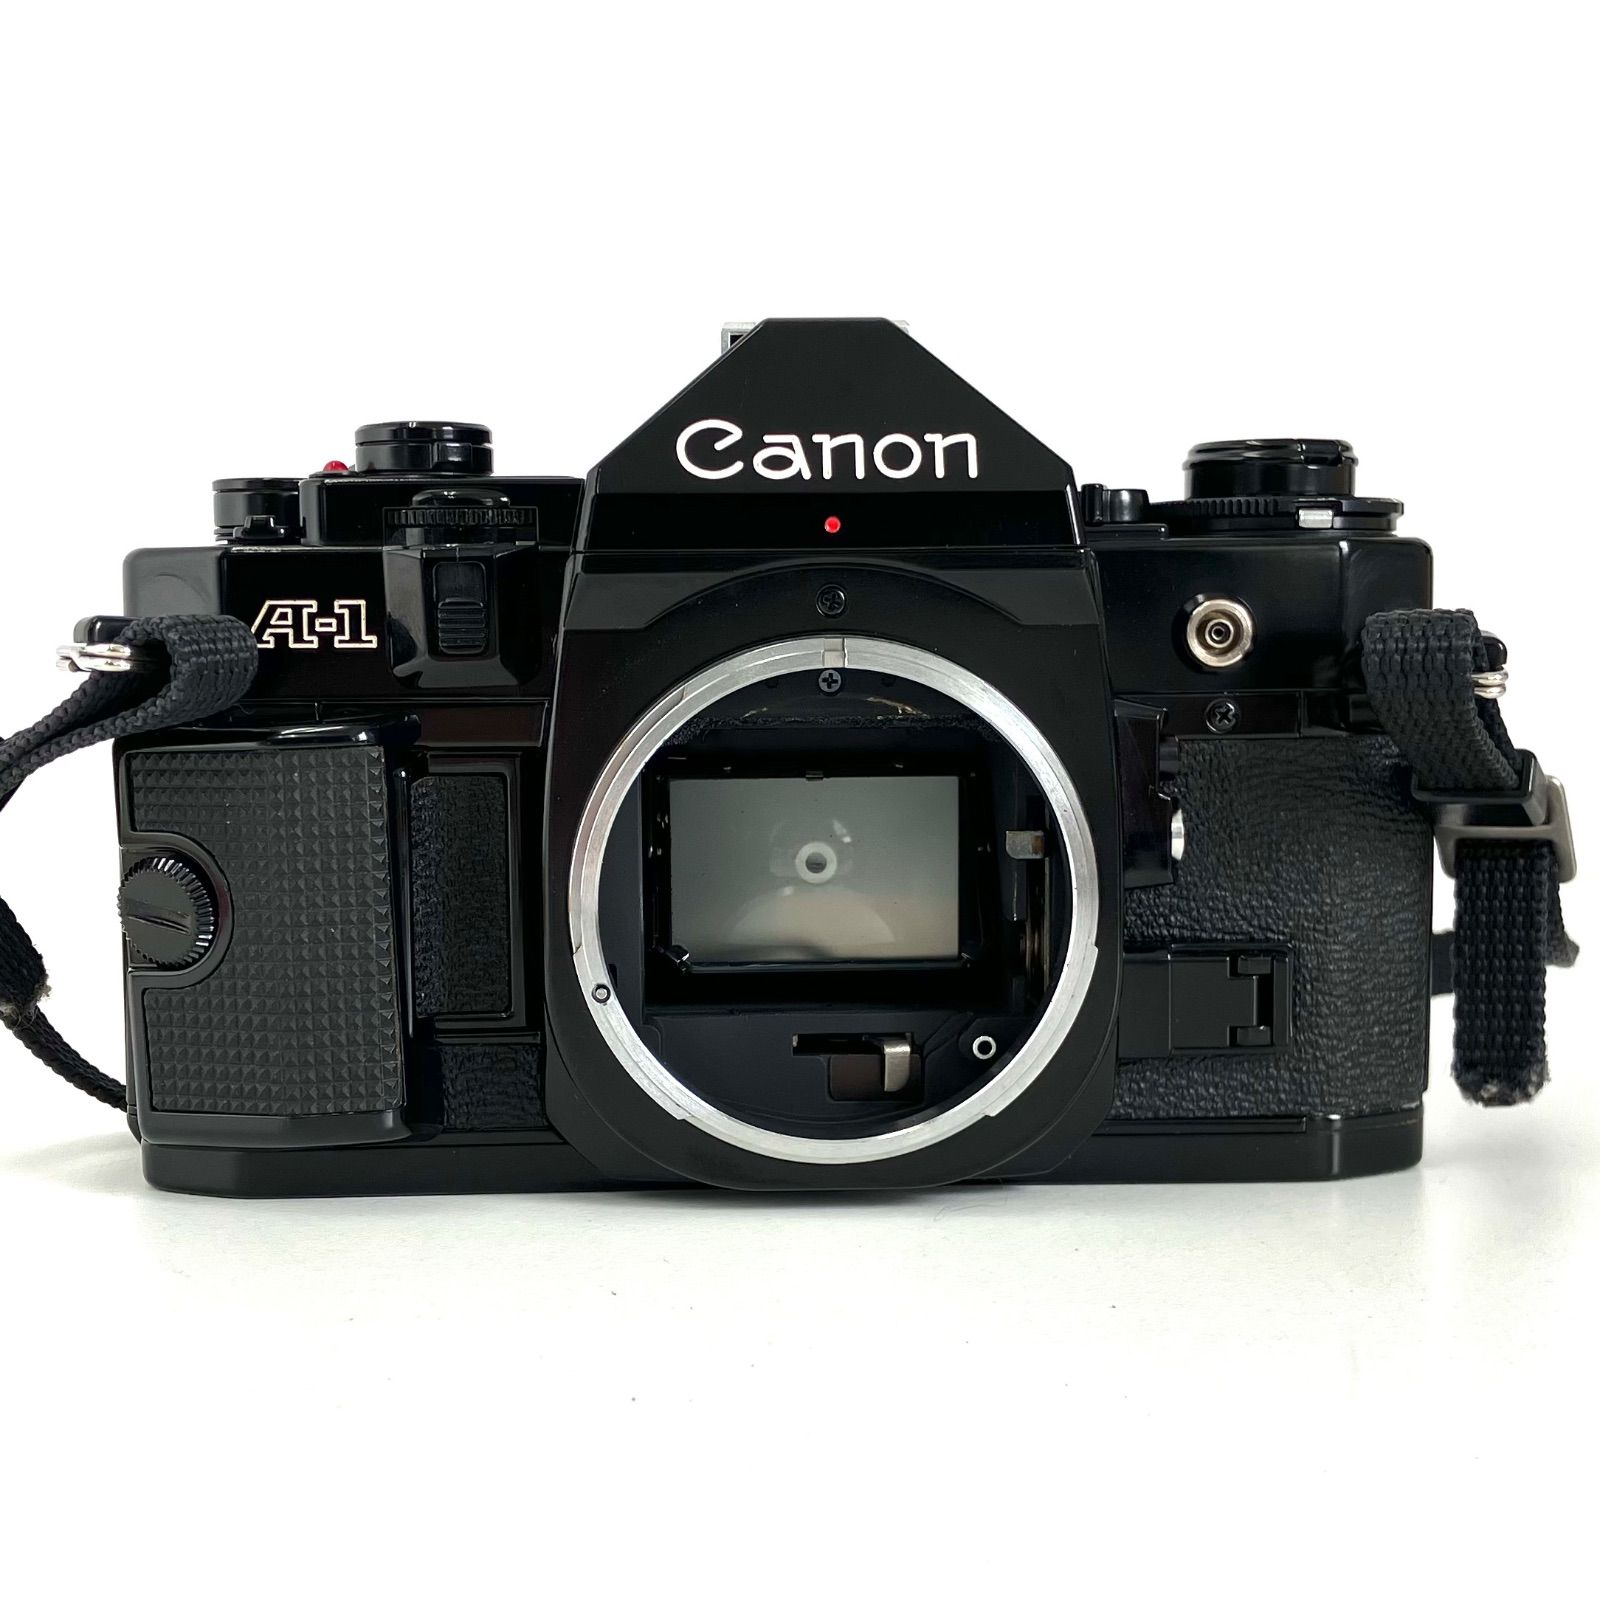 9,395円ストラップ付き美品 Canon A-1 + New FD 28mm f2.8